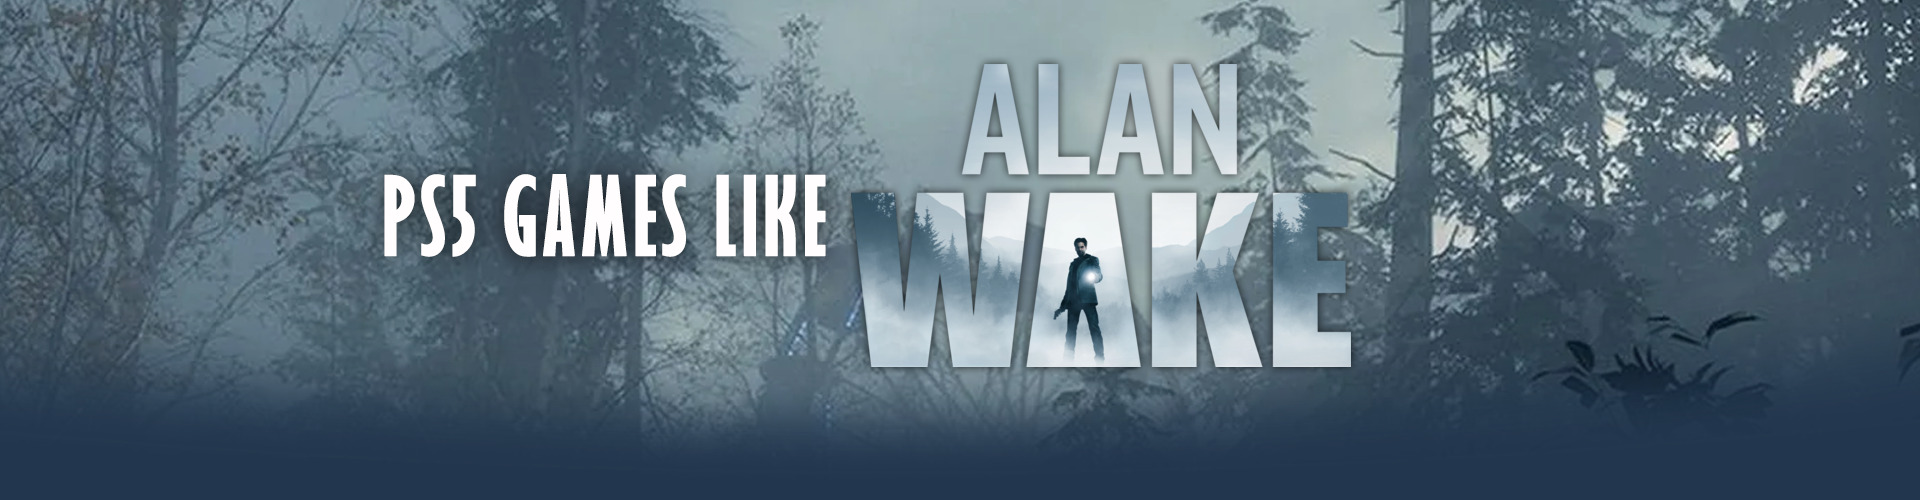 Juegos de Switch como Alan Wake